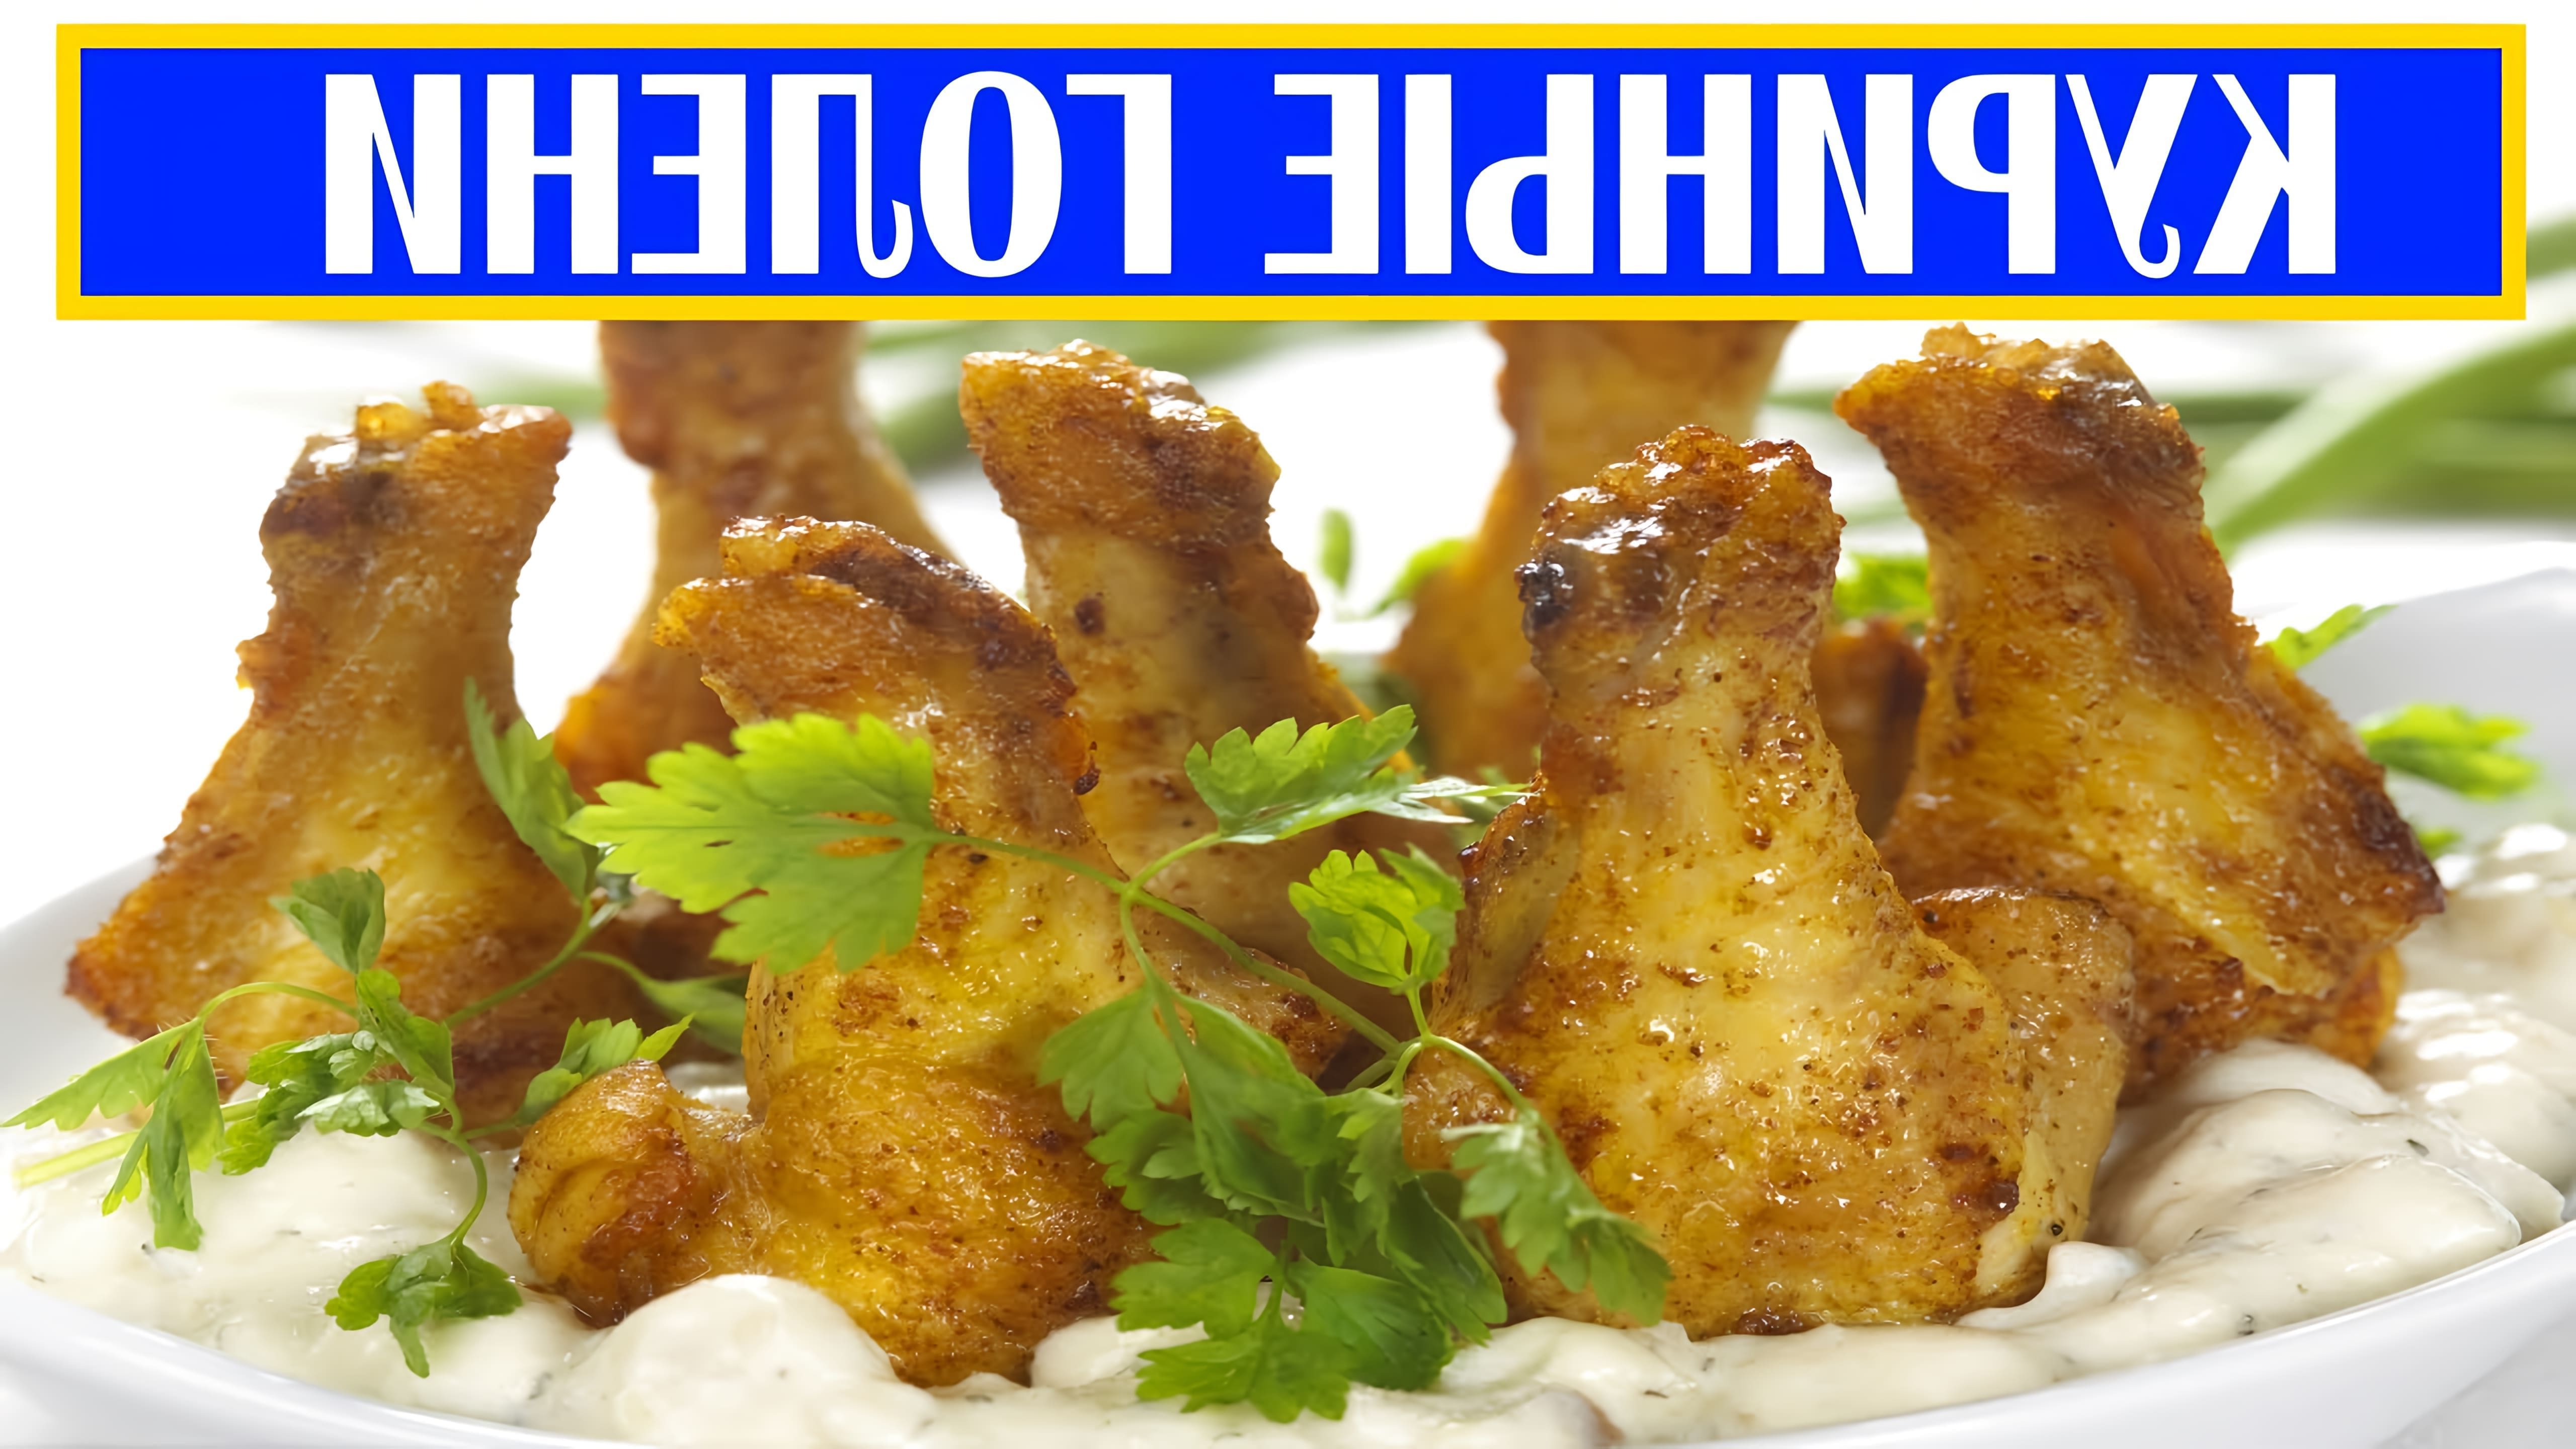 В этом видео демонстрируется рецепт приготовления куриных голеней с луком на сковороде